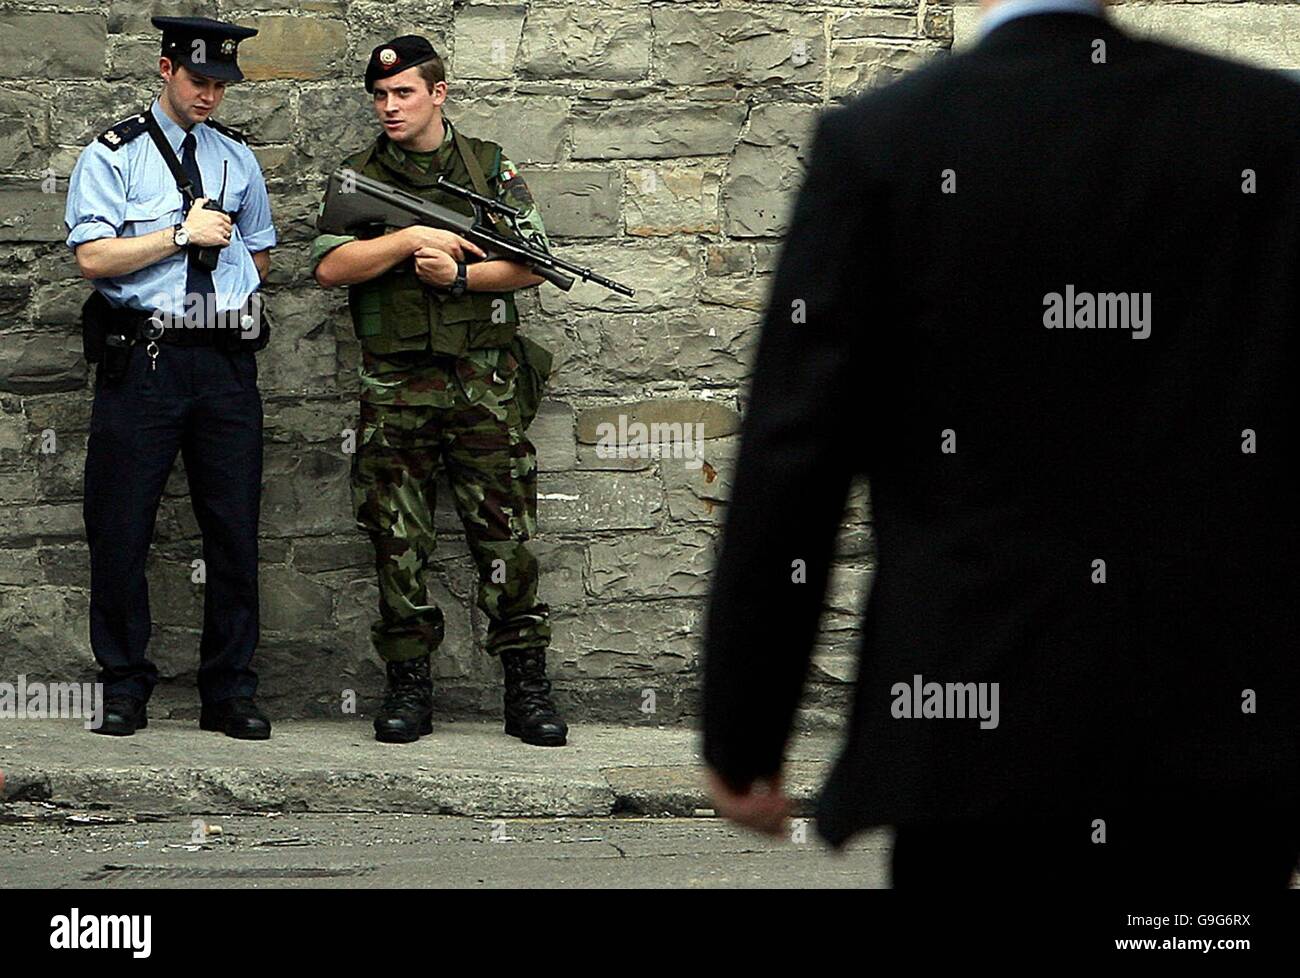 Garda e un soldato vicino a Mansion House nel centro di Dublino, dove un dispositivo sospetto ha causato una paura della sicurezza. Foto Stock